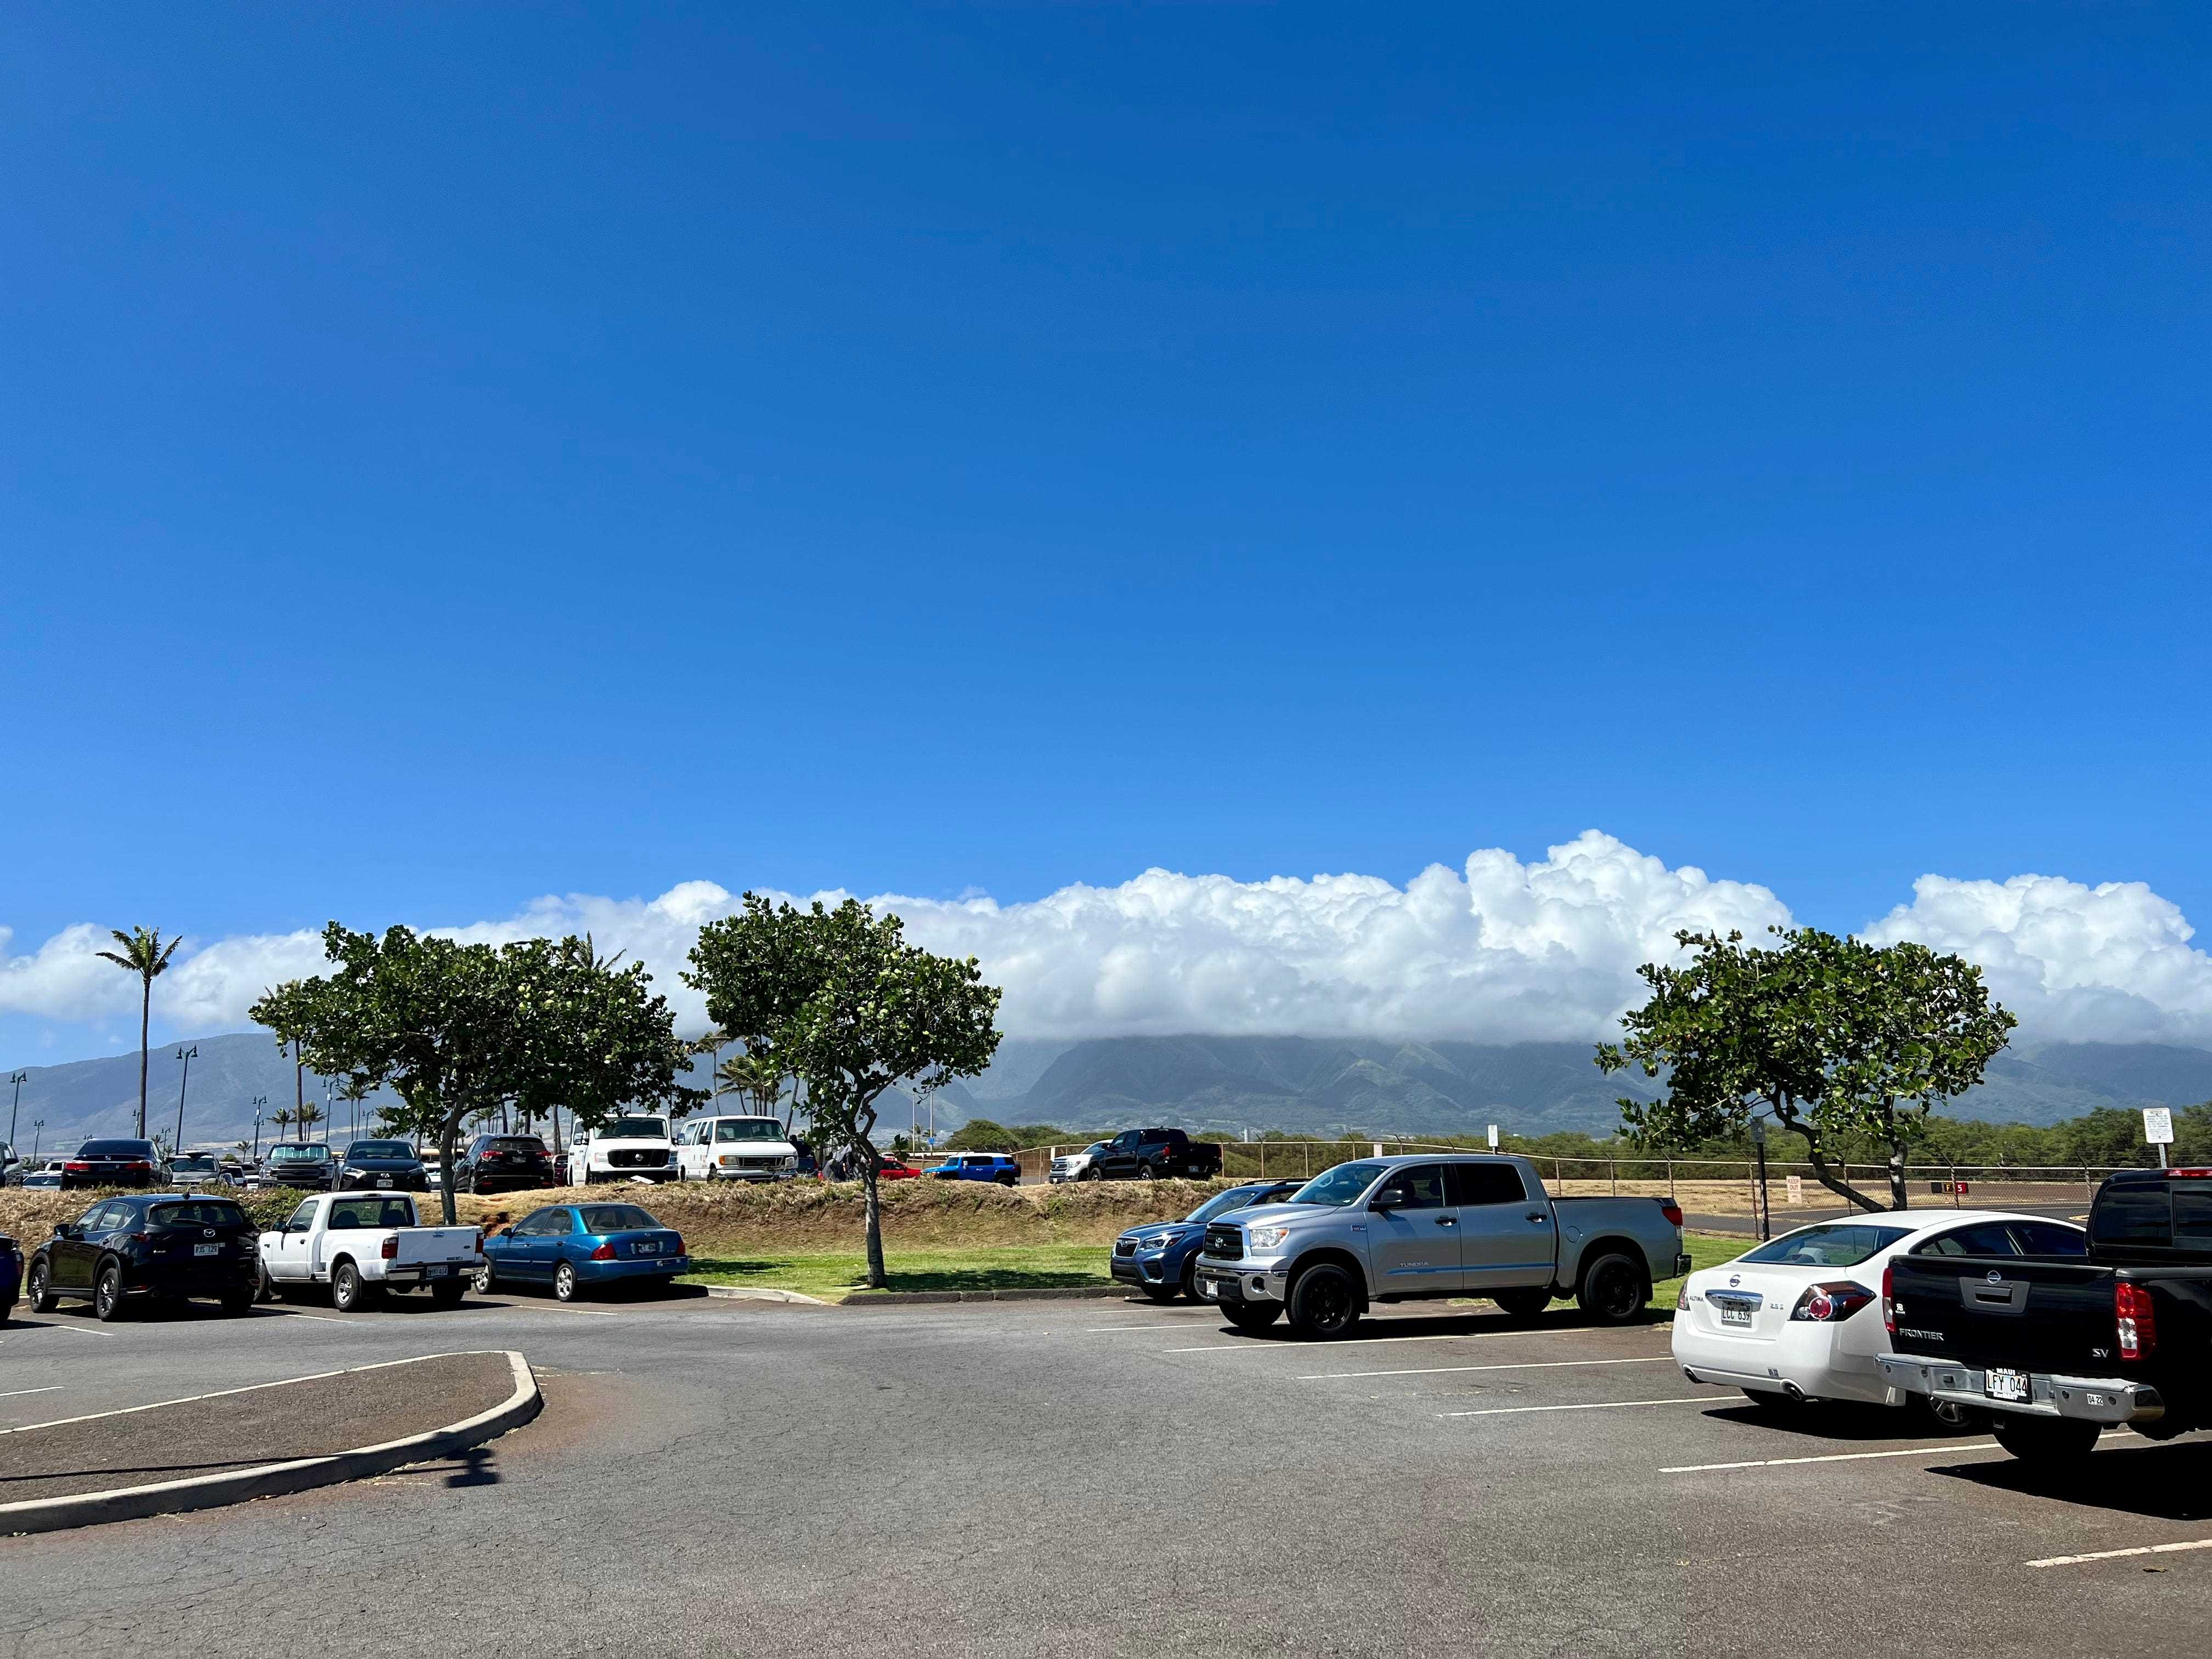 West Maui Mountains vom Pendlerterminal aus gesehen, in dessen Nähe einige Autos geparkt waren